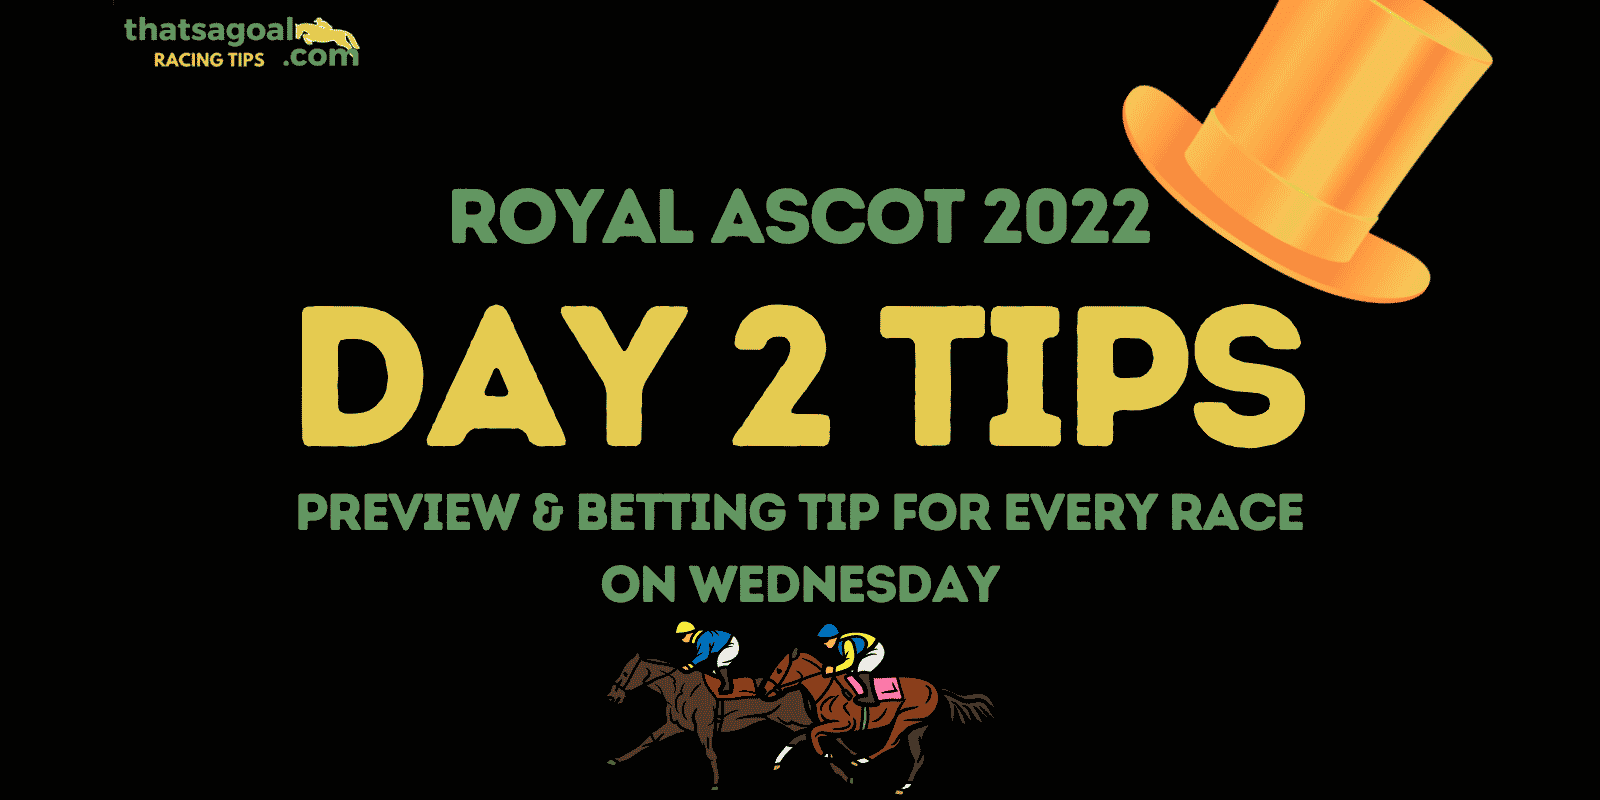 Royal Ascot day 2 tips